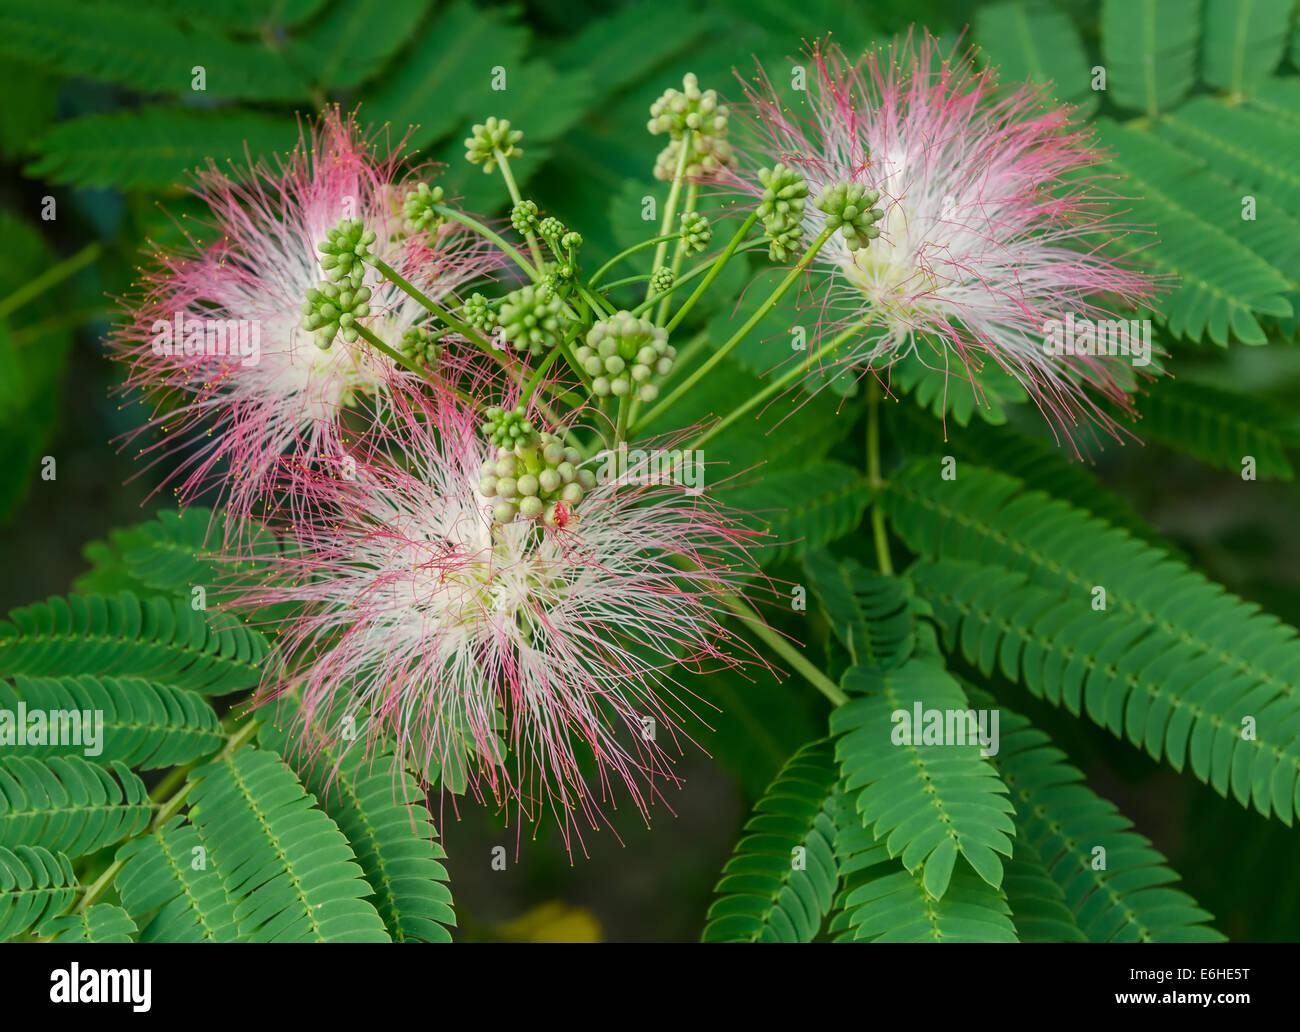 Nahaufnahme von persischer Silk Baum (Albizia Julibrissin) oder Pink Siris Blumen Blätter und unreife Früchte, horizontale Tag erschossen Stockfoto